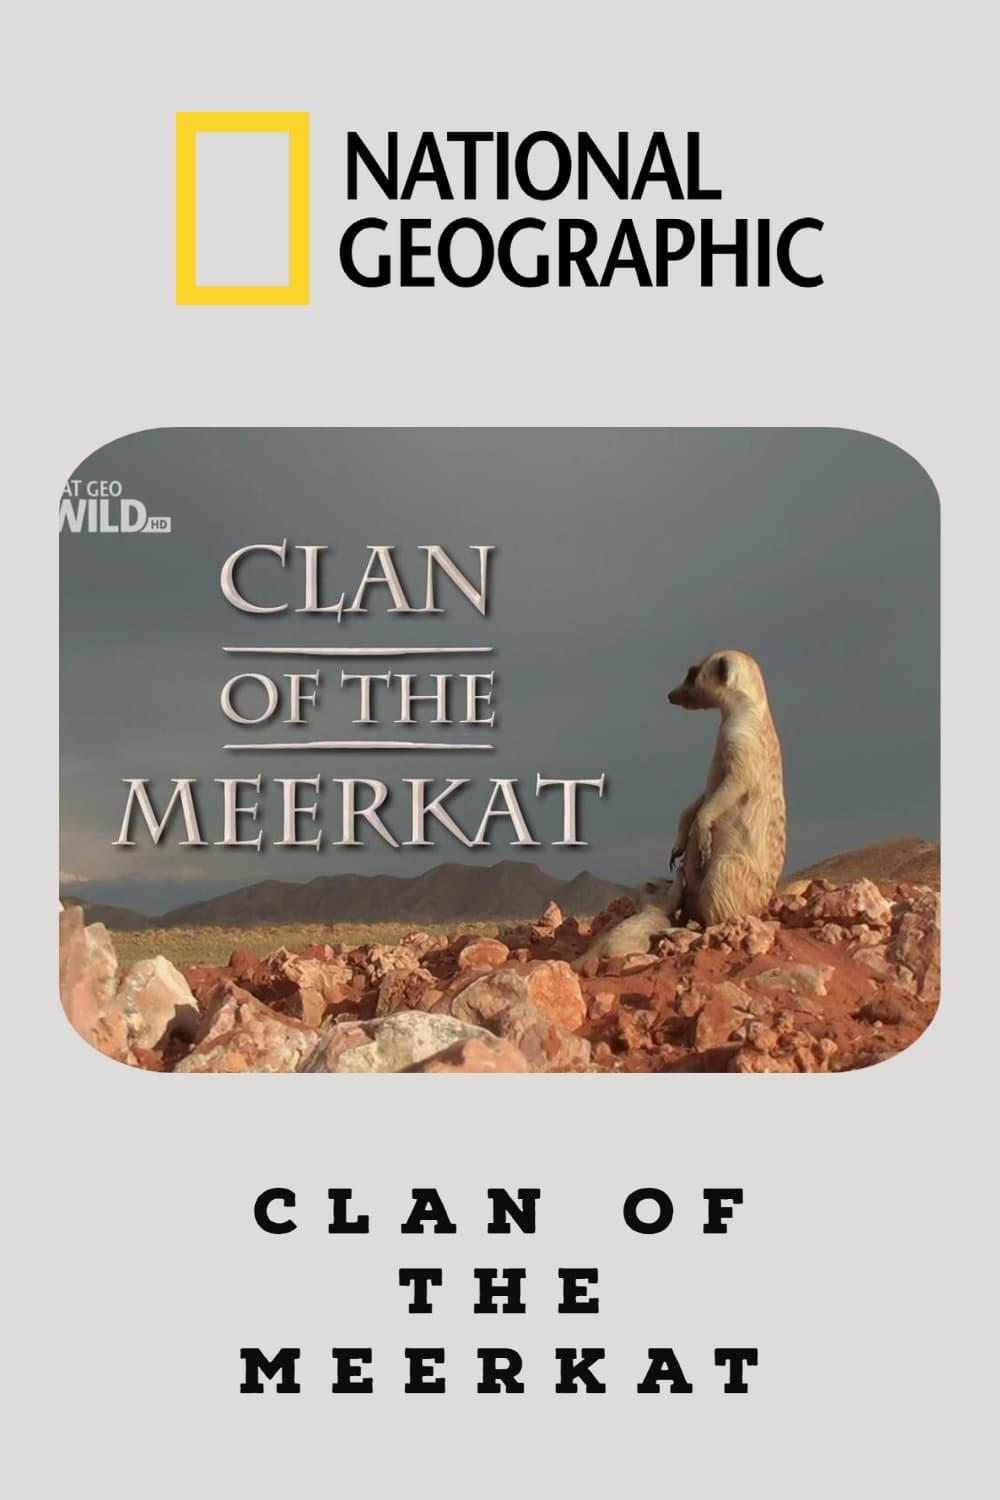 Clan of the Meerkat poster